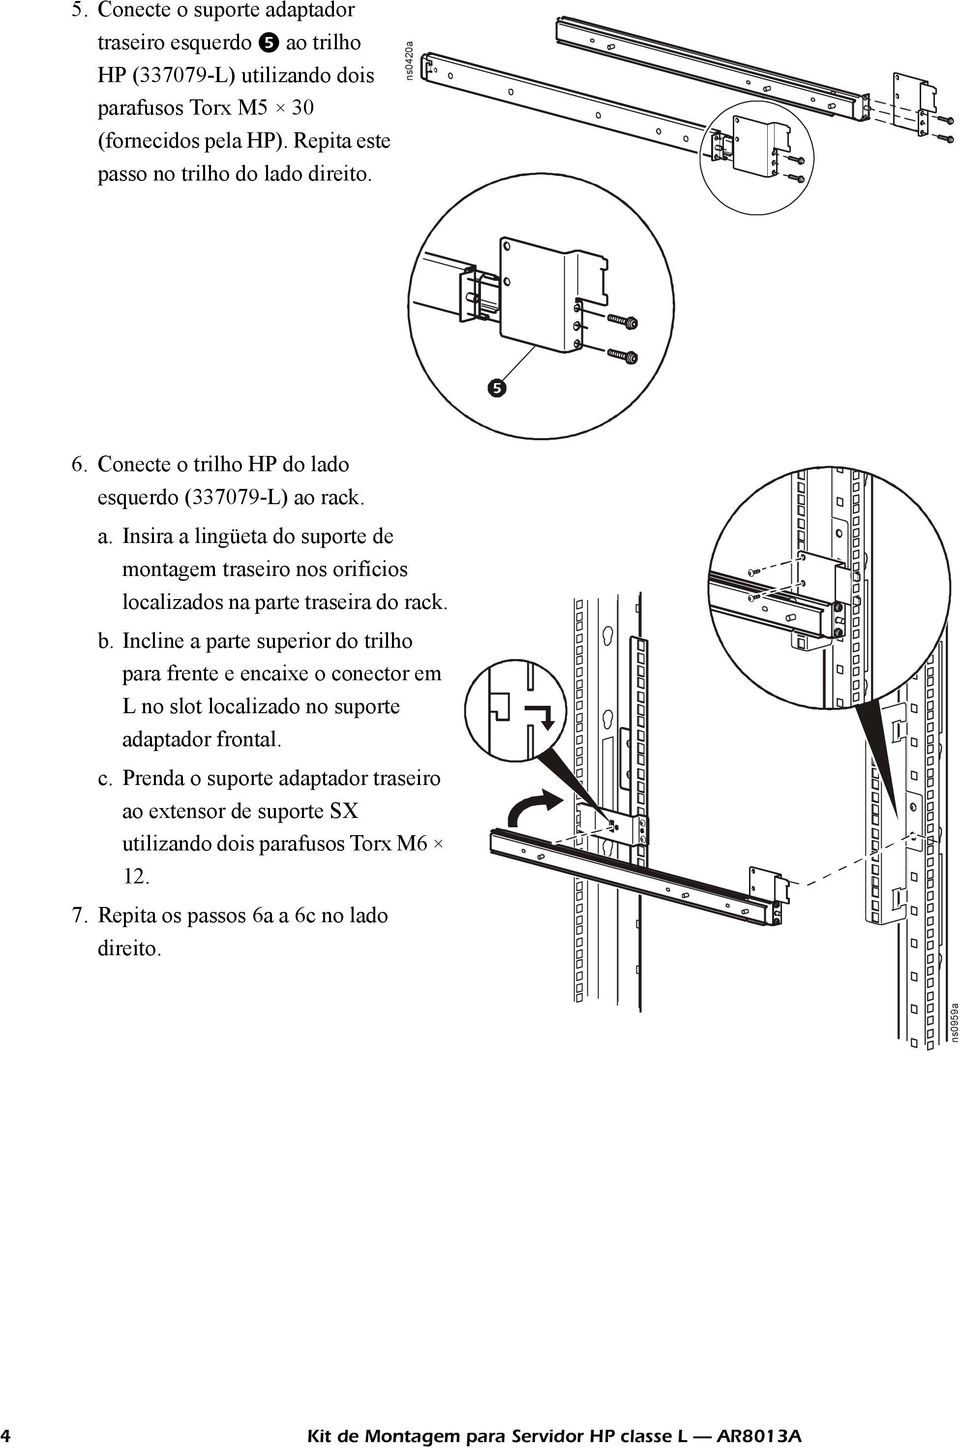 rack. a. Insira a lingüeta do suporte de montagem traseiro nos orifícios localizados na parte traseira do rack. b.